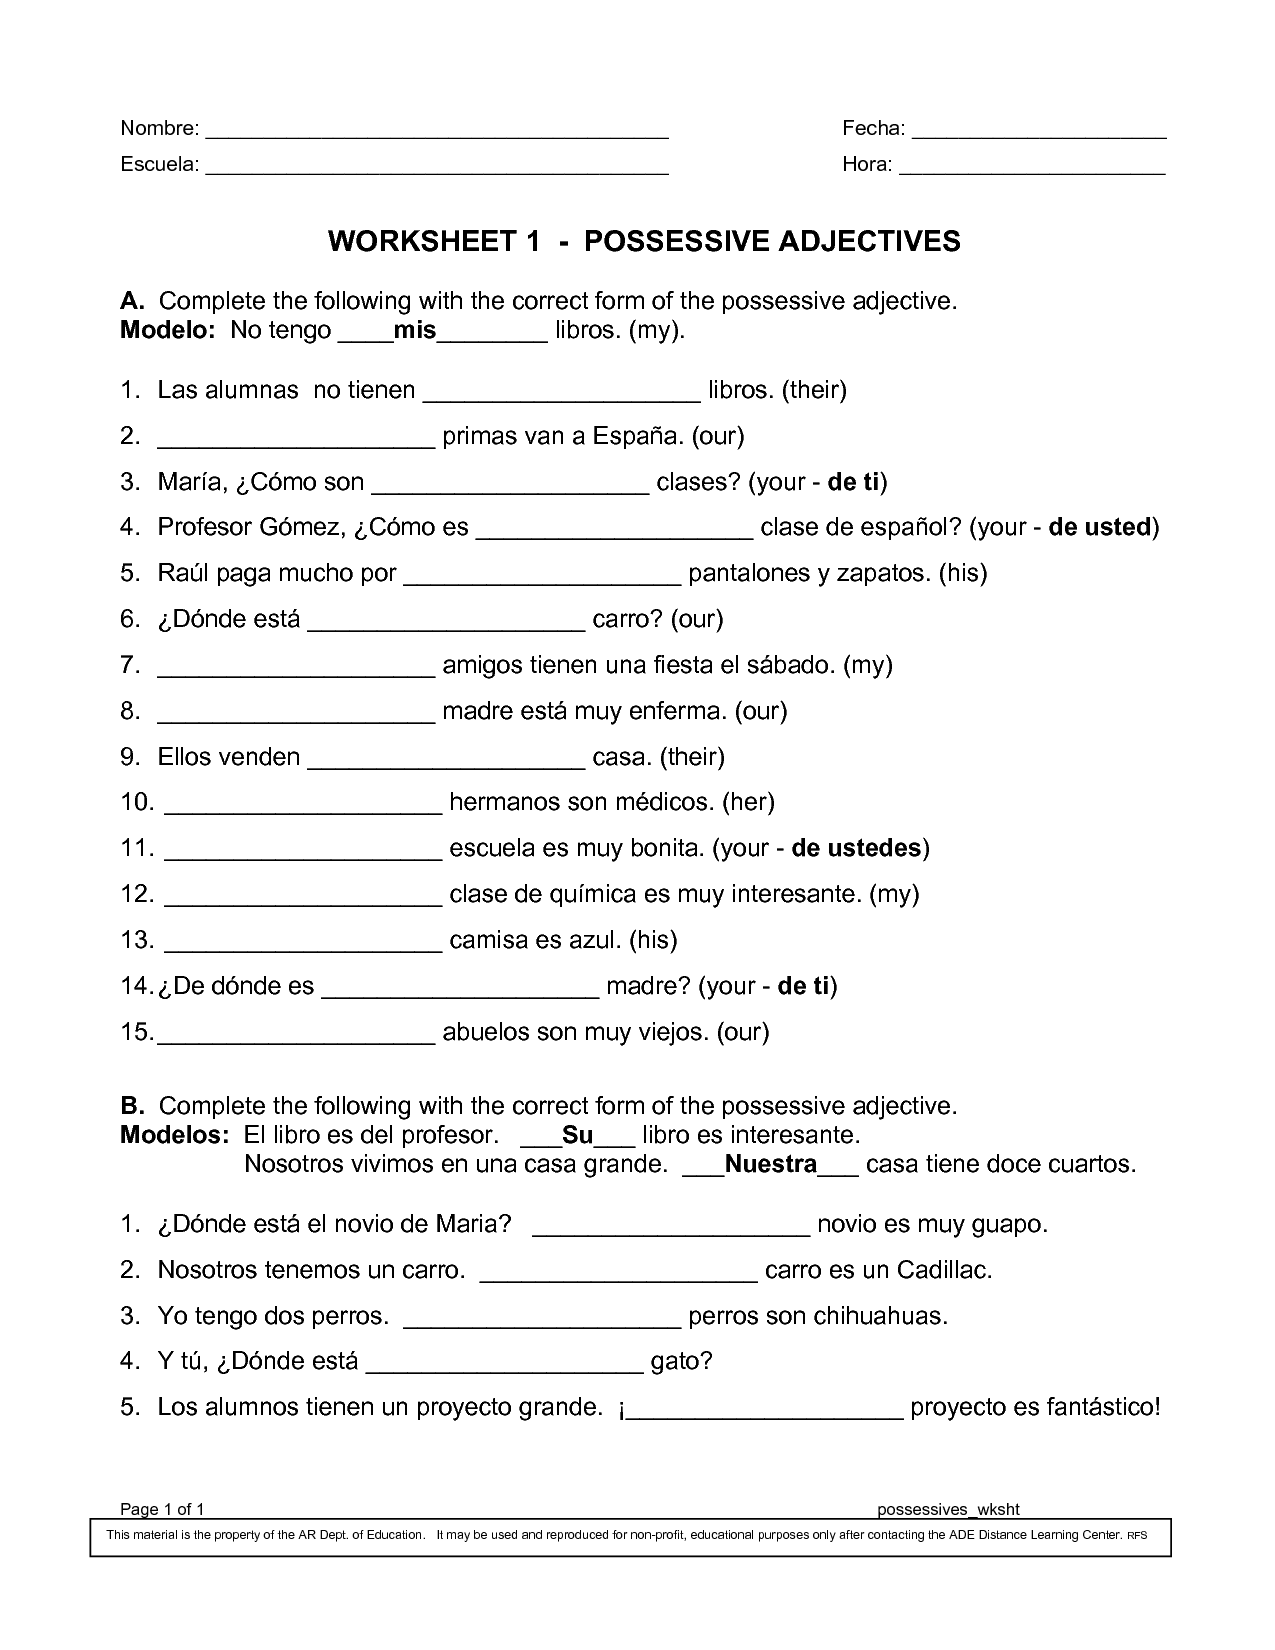 15-best-images-of-spanish-possessive-pronouns-worksheet-spanish-possessive-adjectives